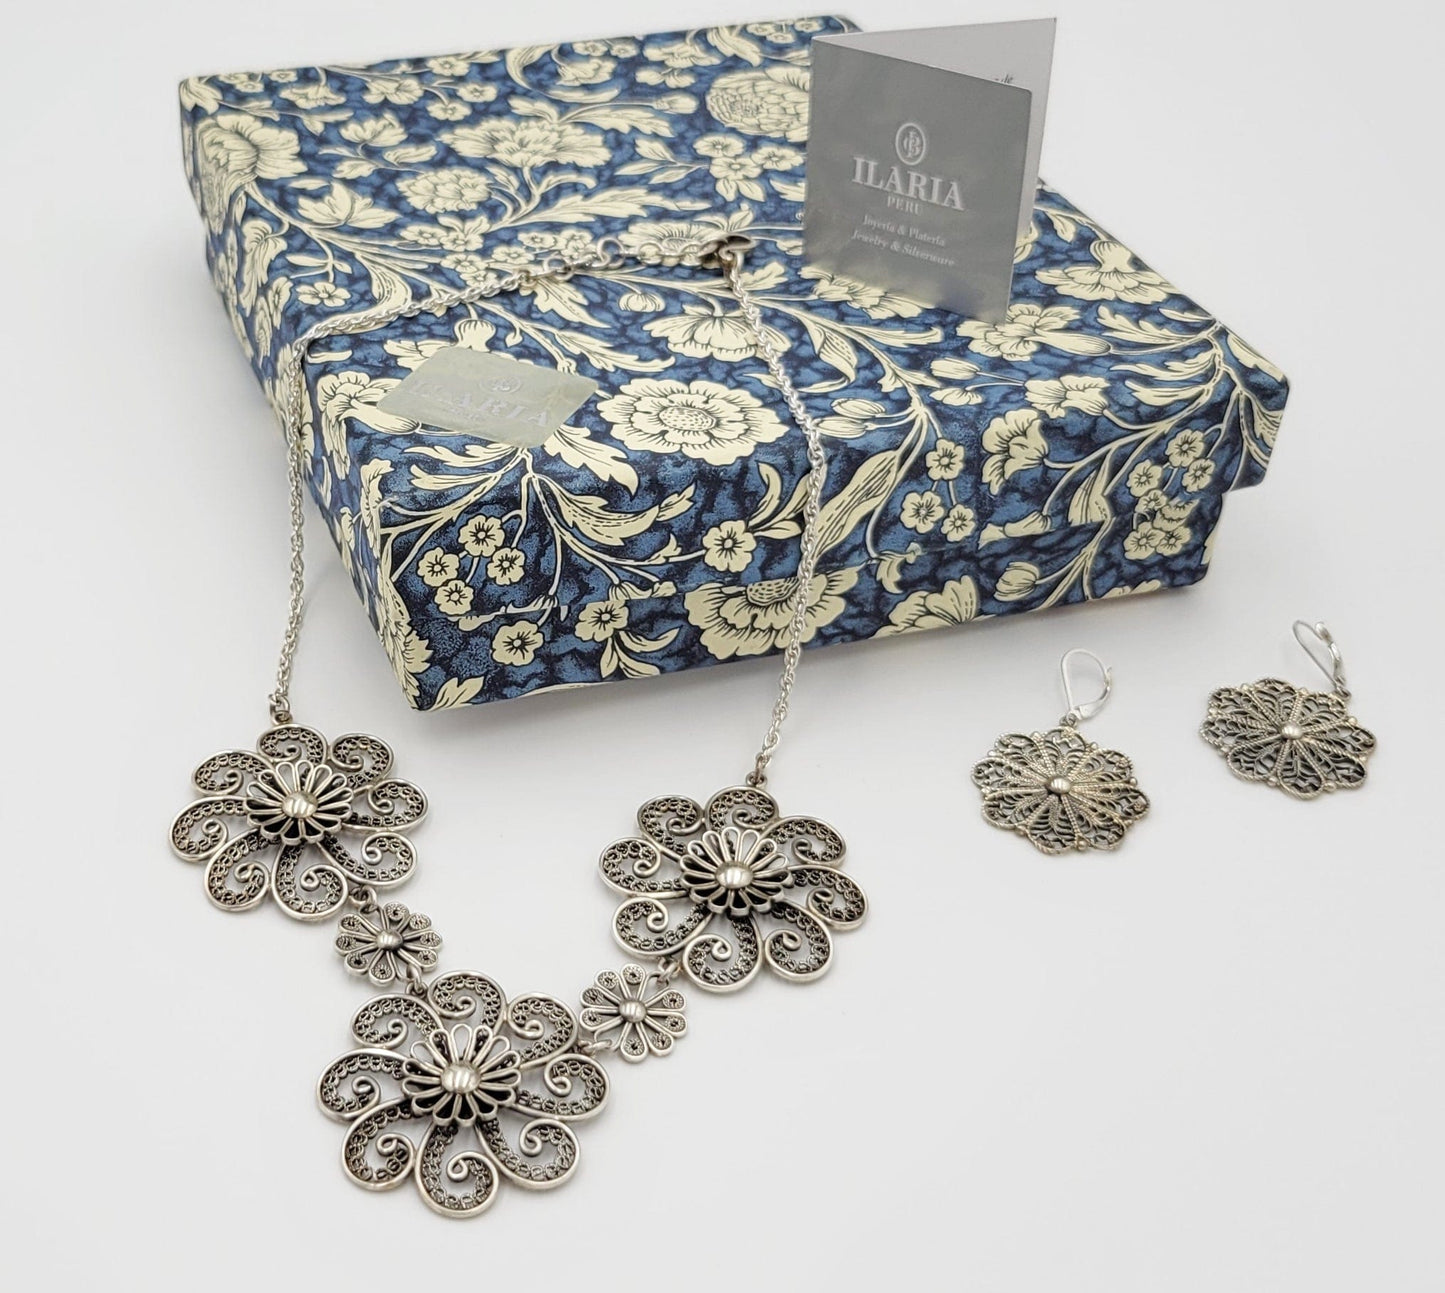 Ilaria Peru Jewelry Designer Ilaria Peru Sterling Silver Statement Necklace & Earrings Set in Original Box